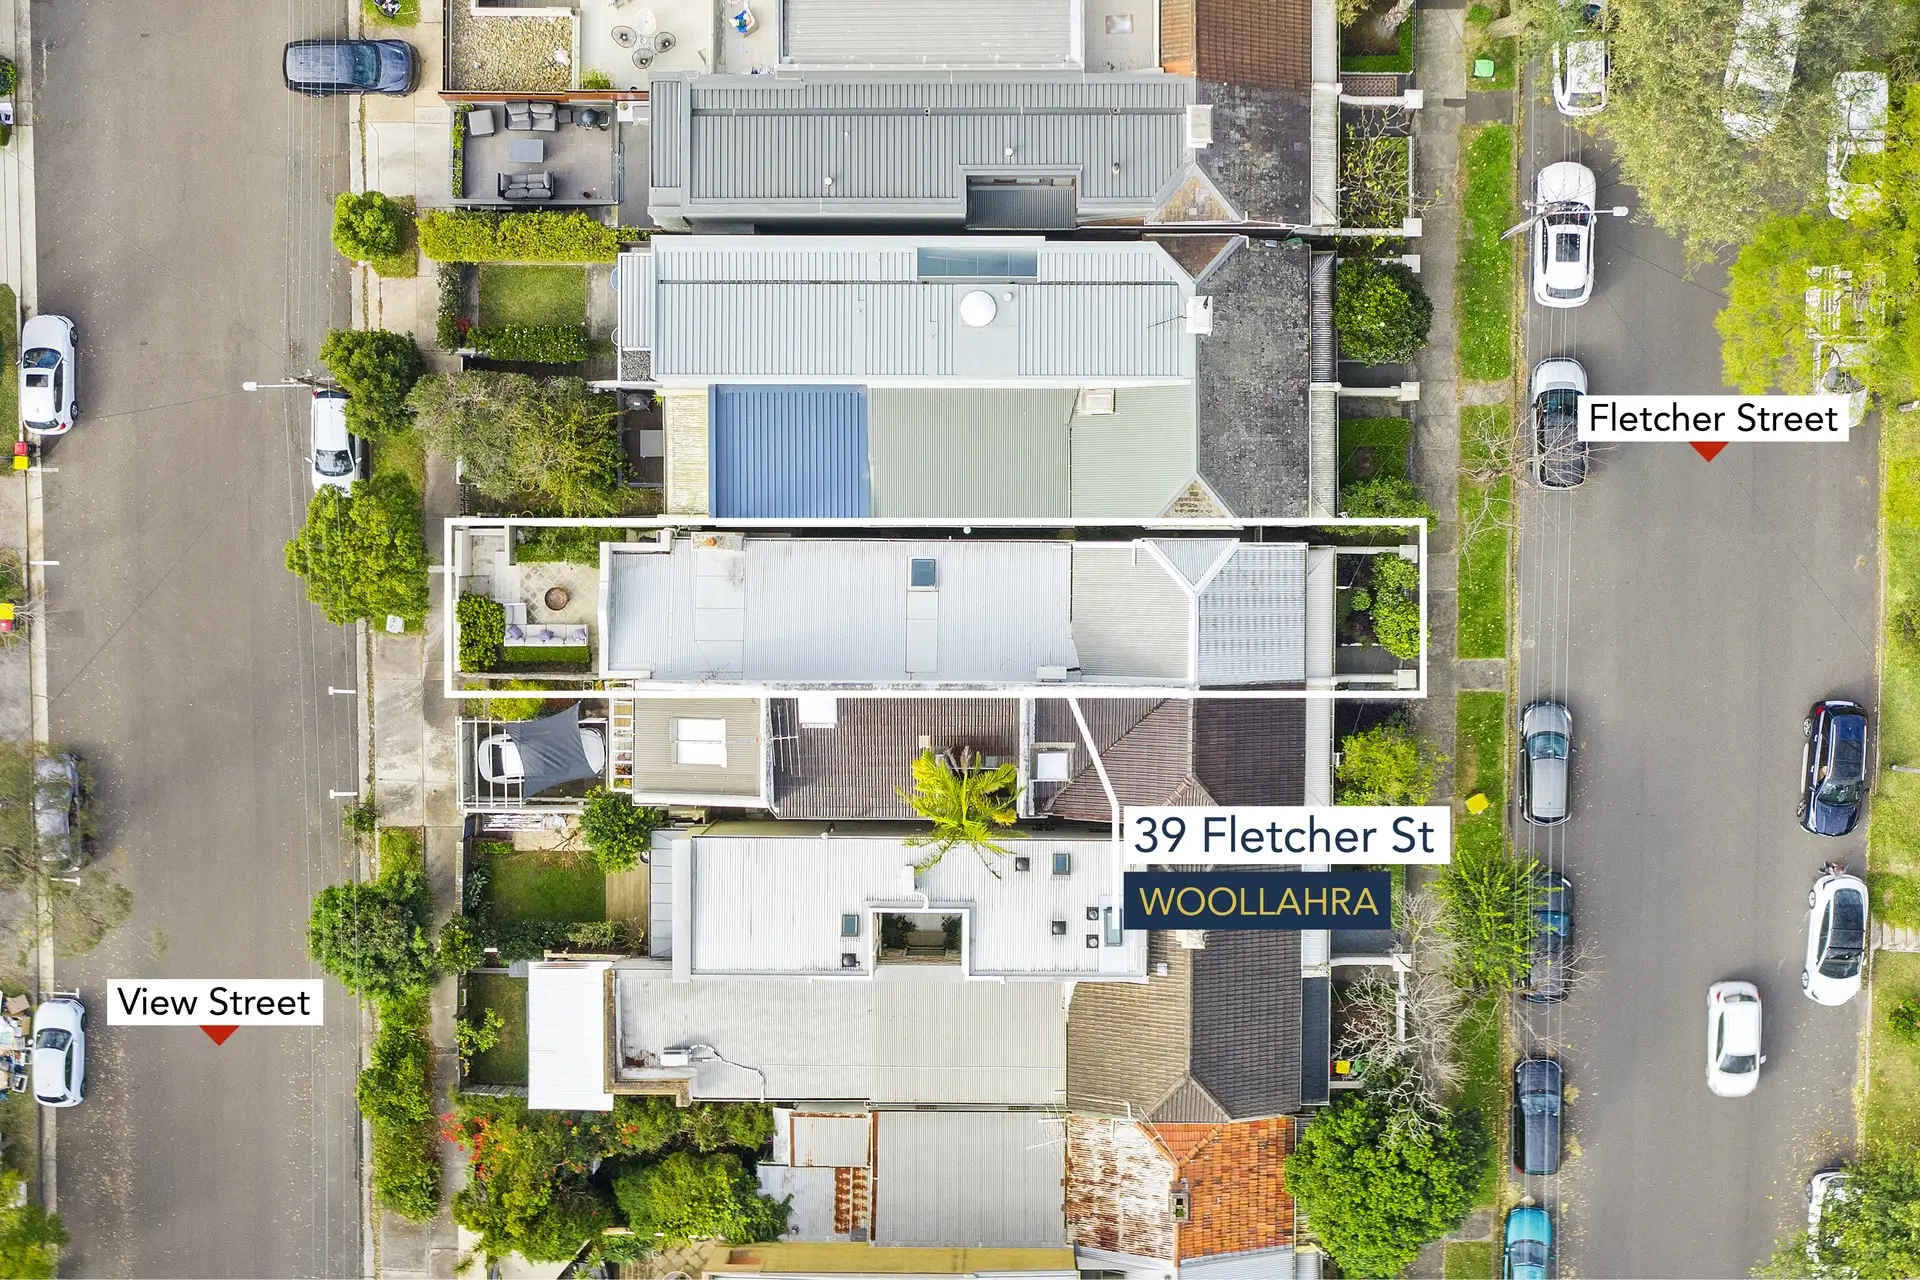 39 Fletcher Street, Woollahra Sold by Bradfield Badgerfox - image 1